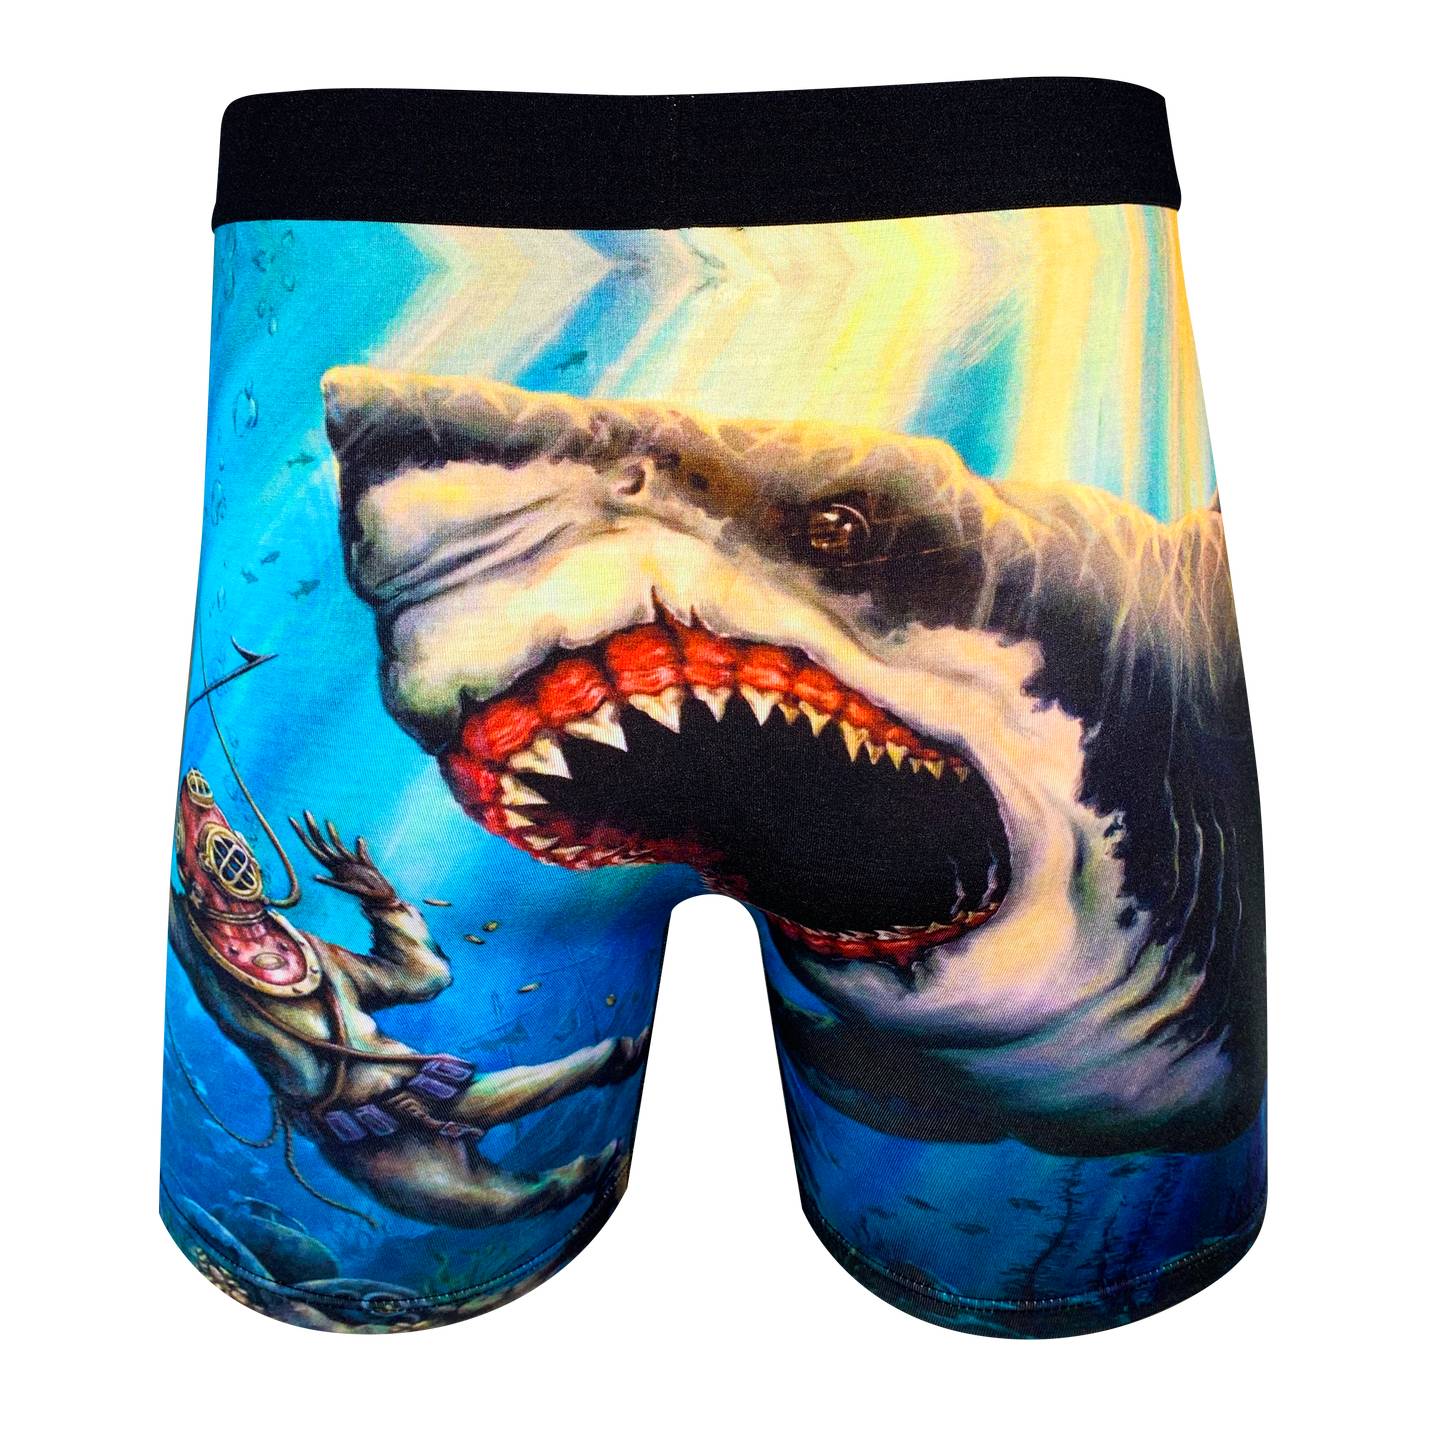 Forget Chafing Forever? 2Ballz Reinvents Men's Underwear (Shark